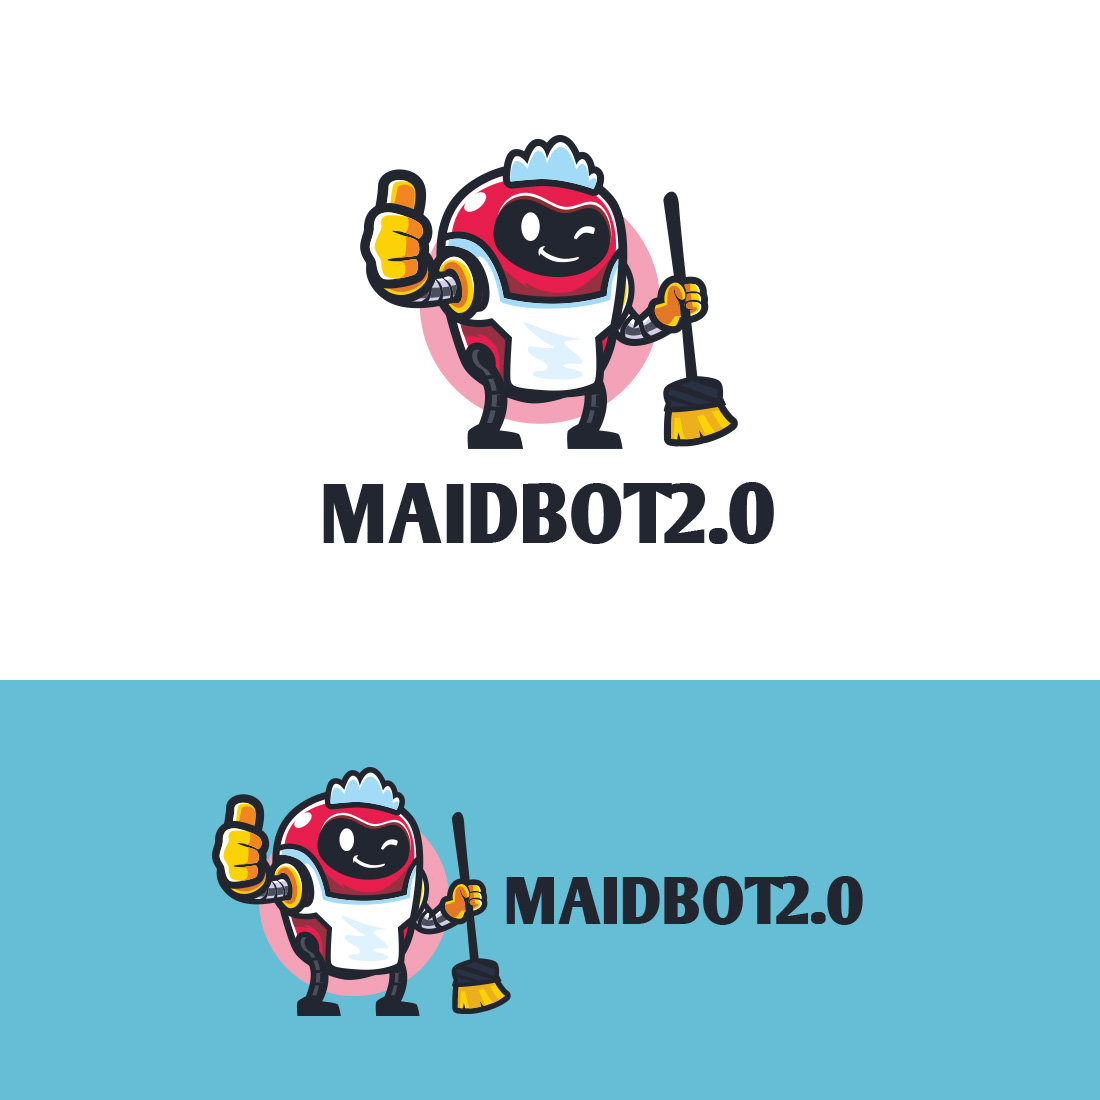 Maid Bot Character Mascot Logo cover image.